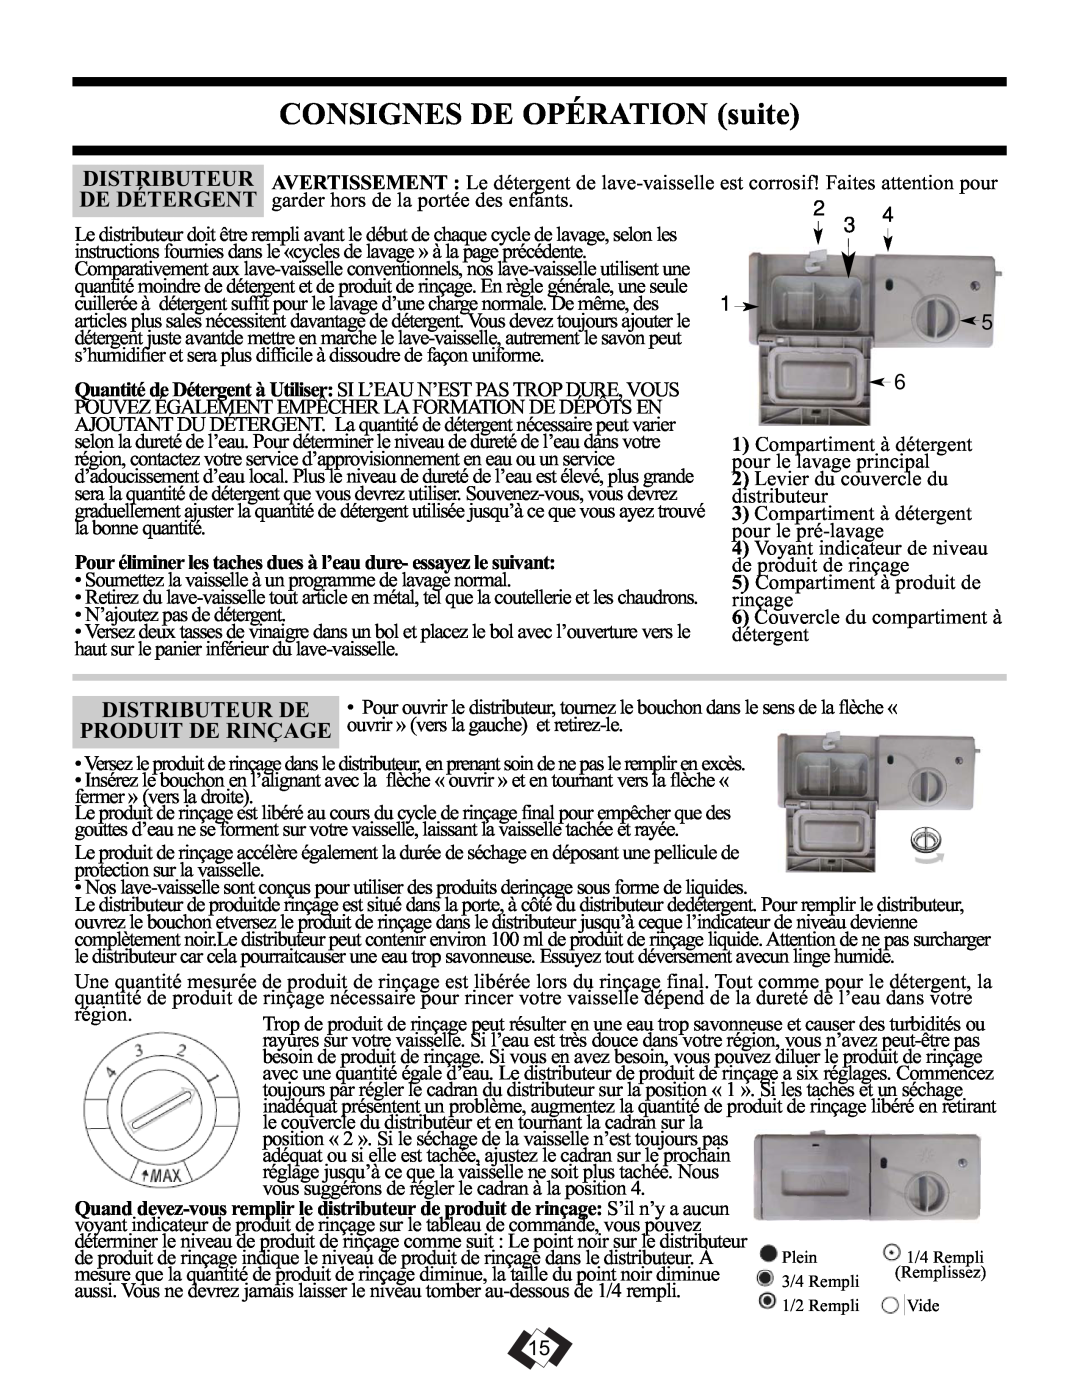 Danby DDW1899WP-1 operating instructions CONSIGNES DE OPÉRATION suite, Distributeur De, Produit De Rinçage 